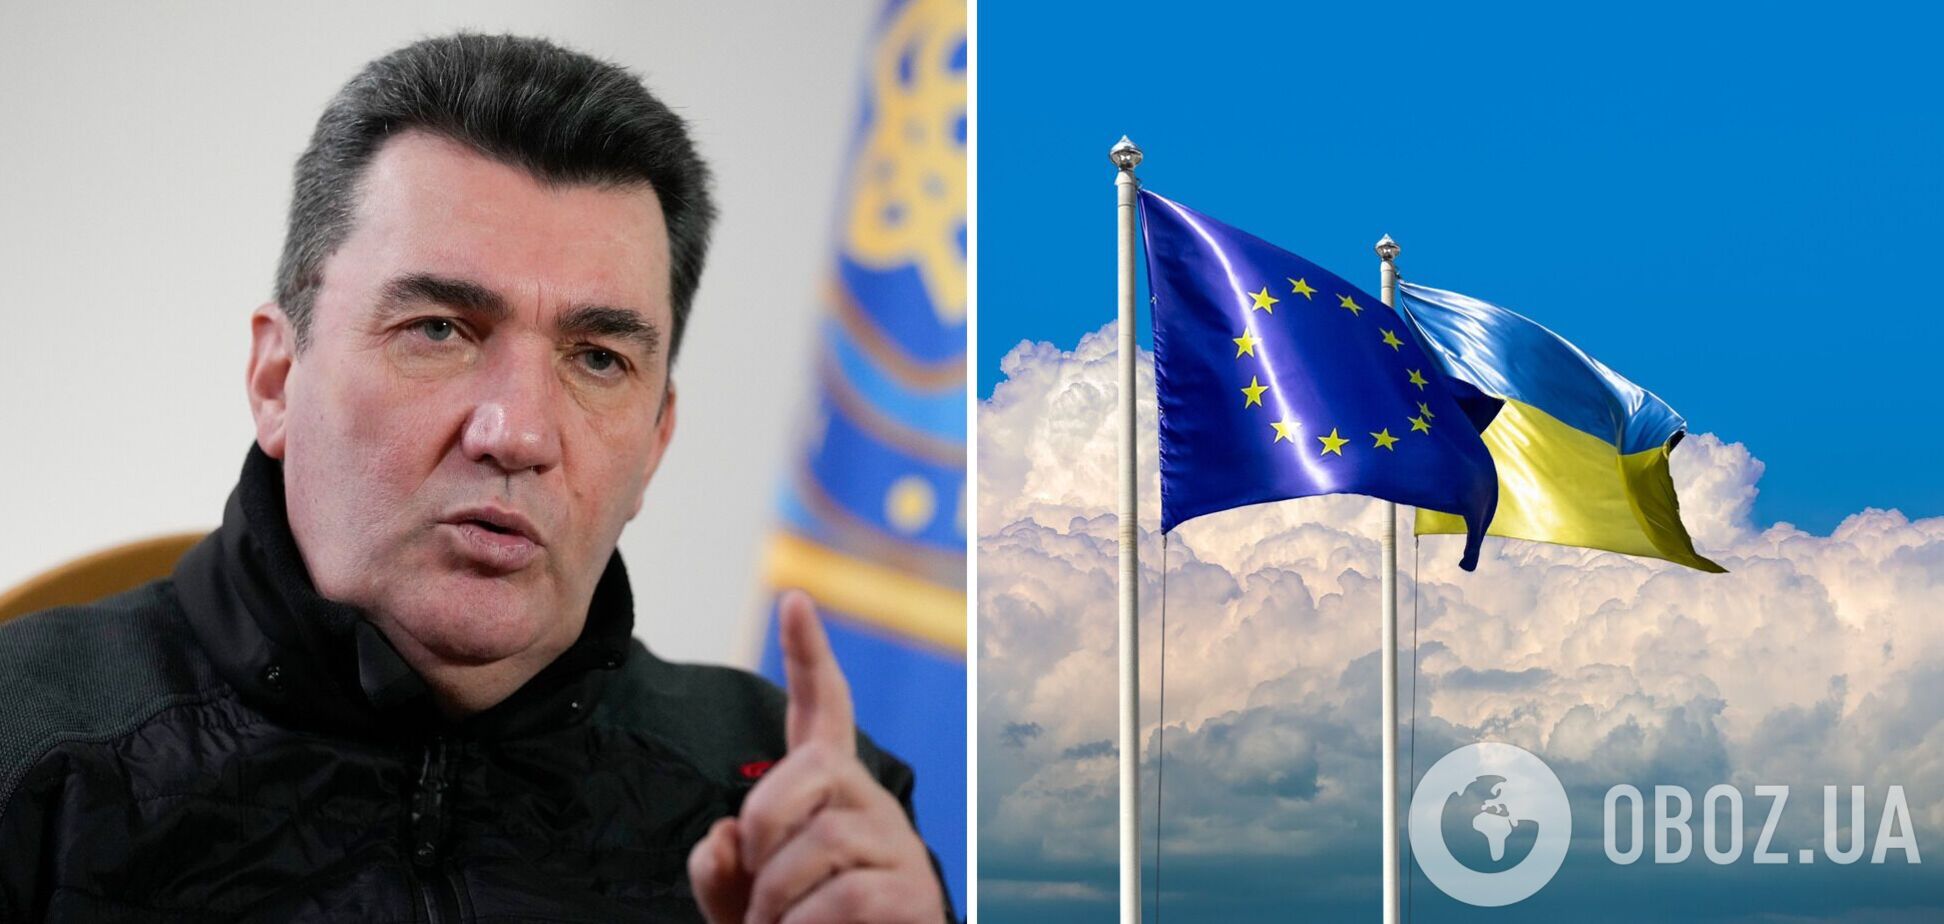 Данилов: ради вступления в ЕС Украина готова идти на компромиссы